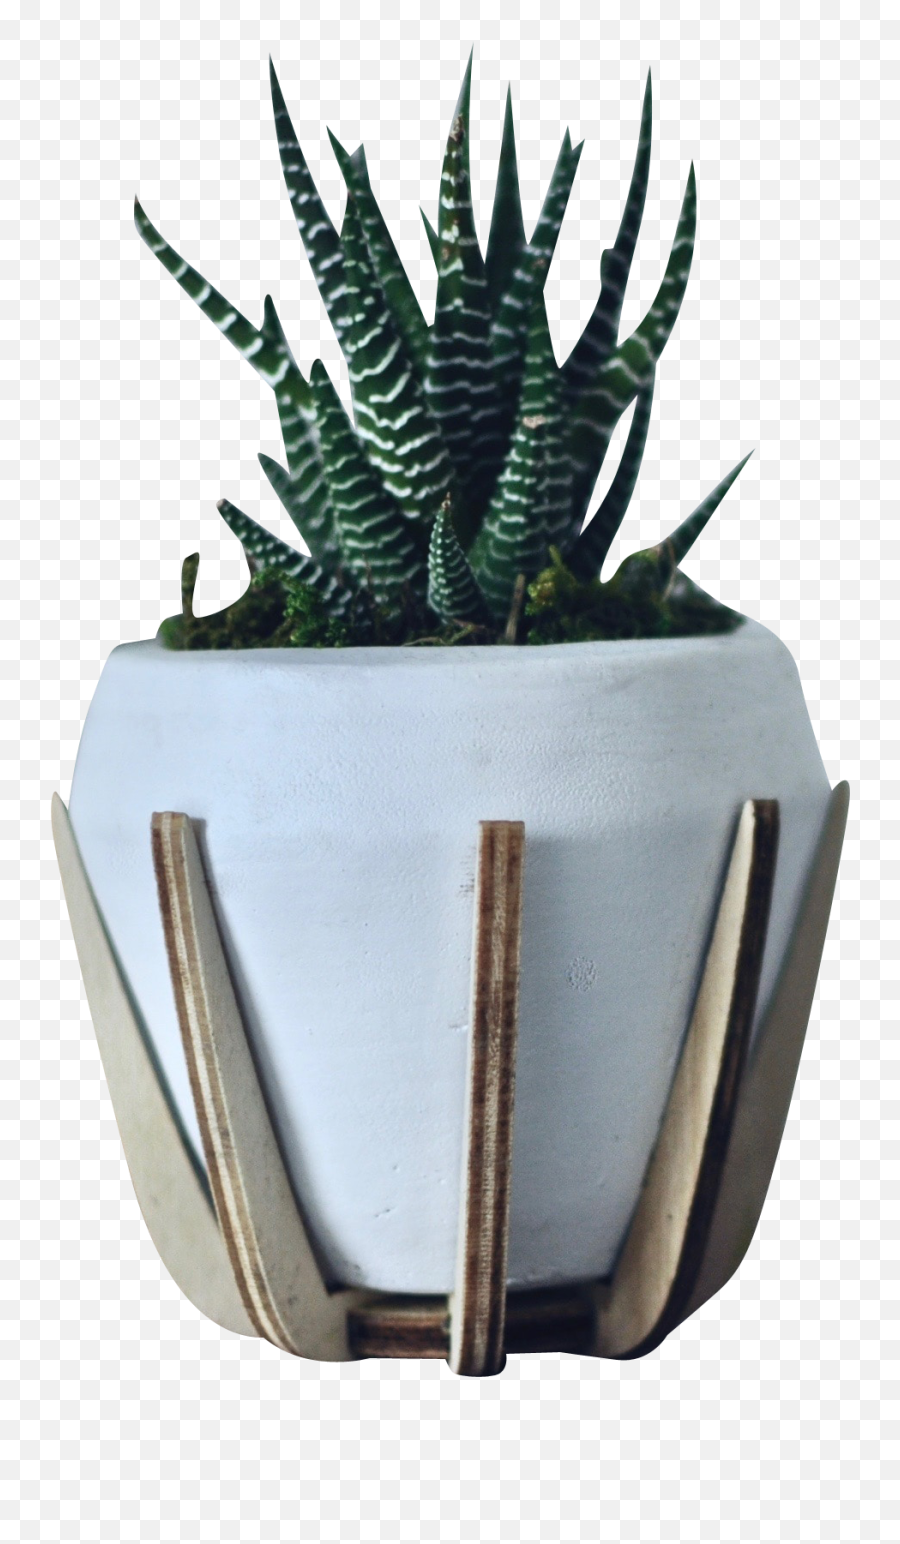 Green Zebra White Pot Transparent Background Png - Free Agave,Green Transparent Background